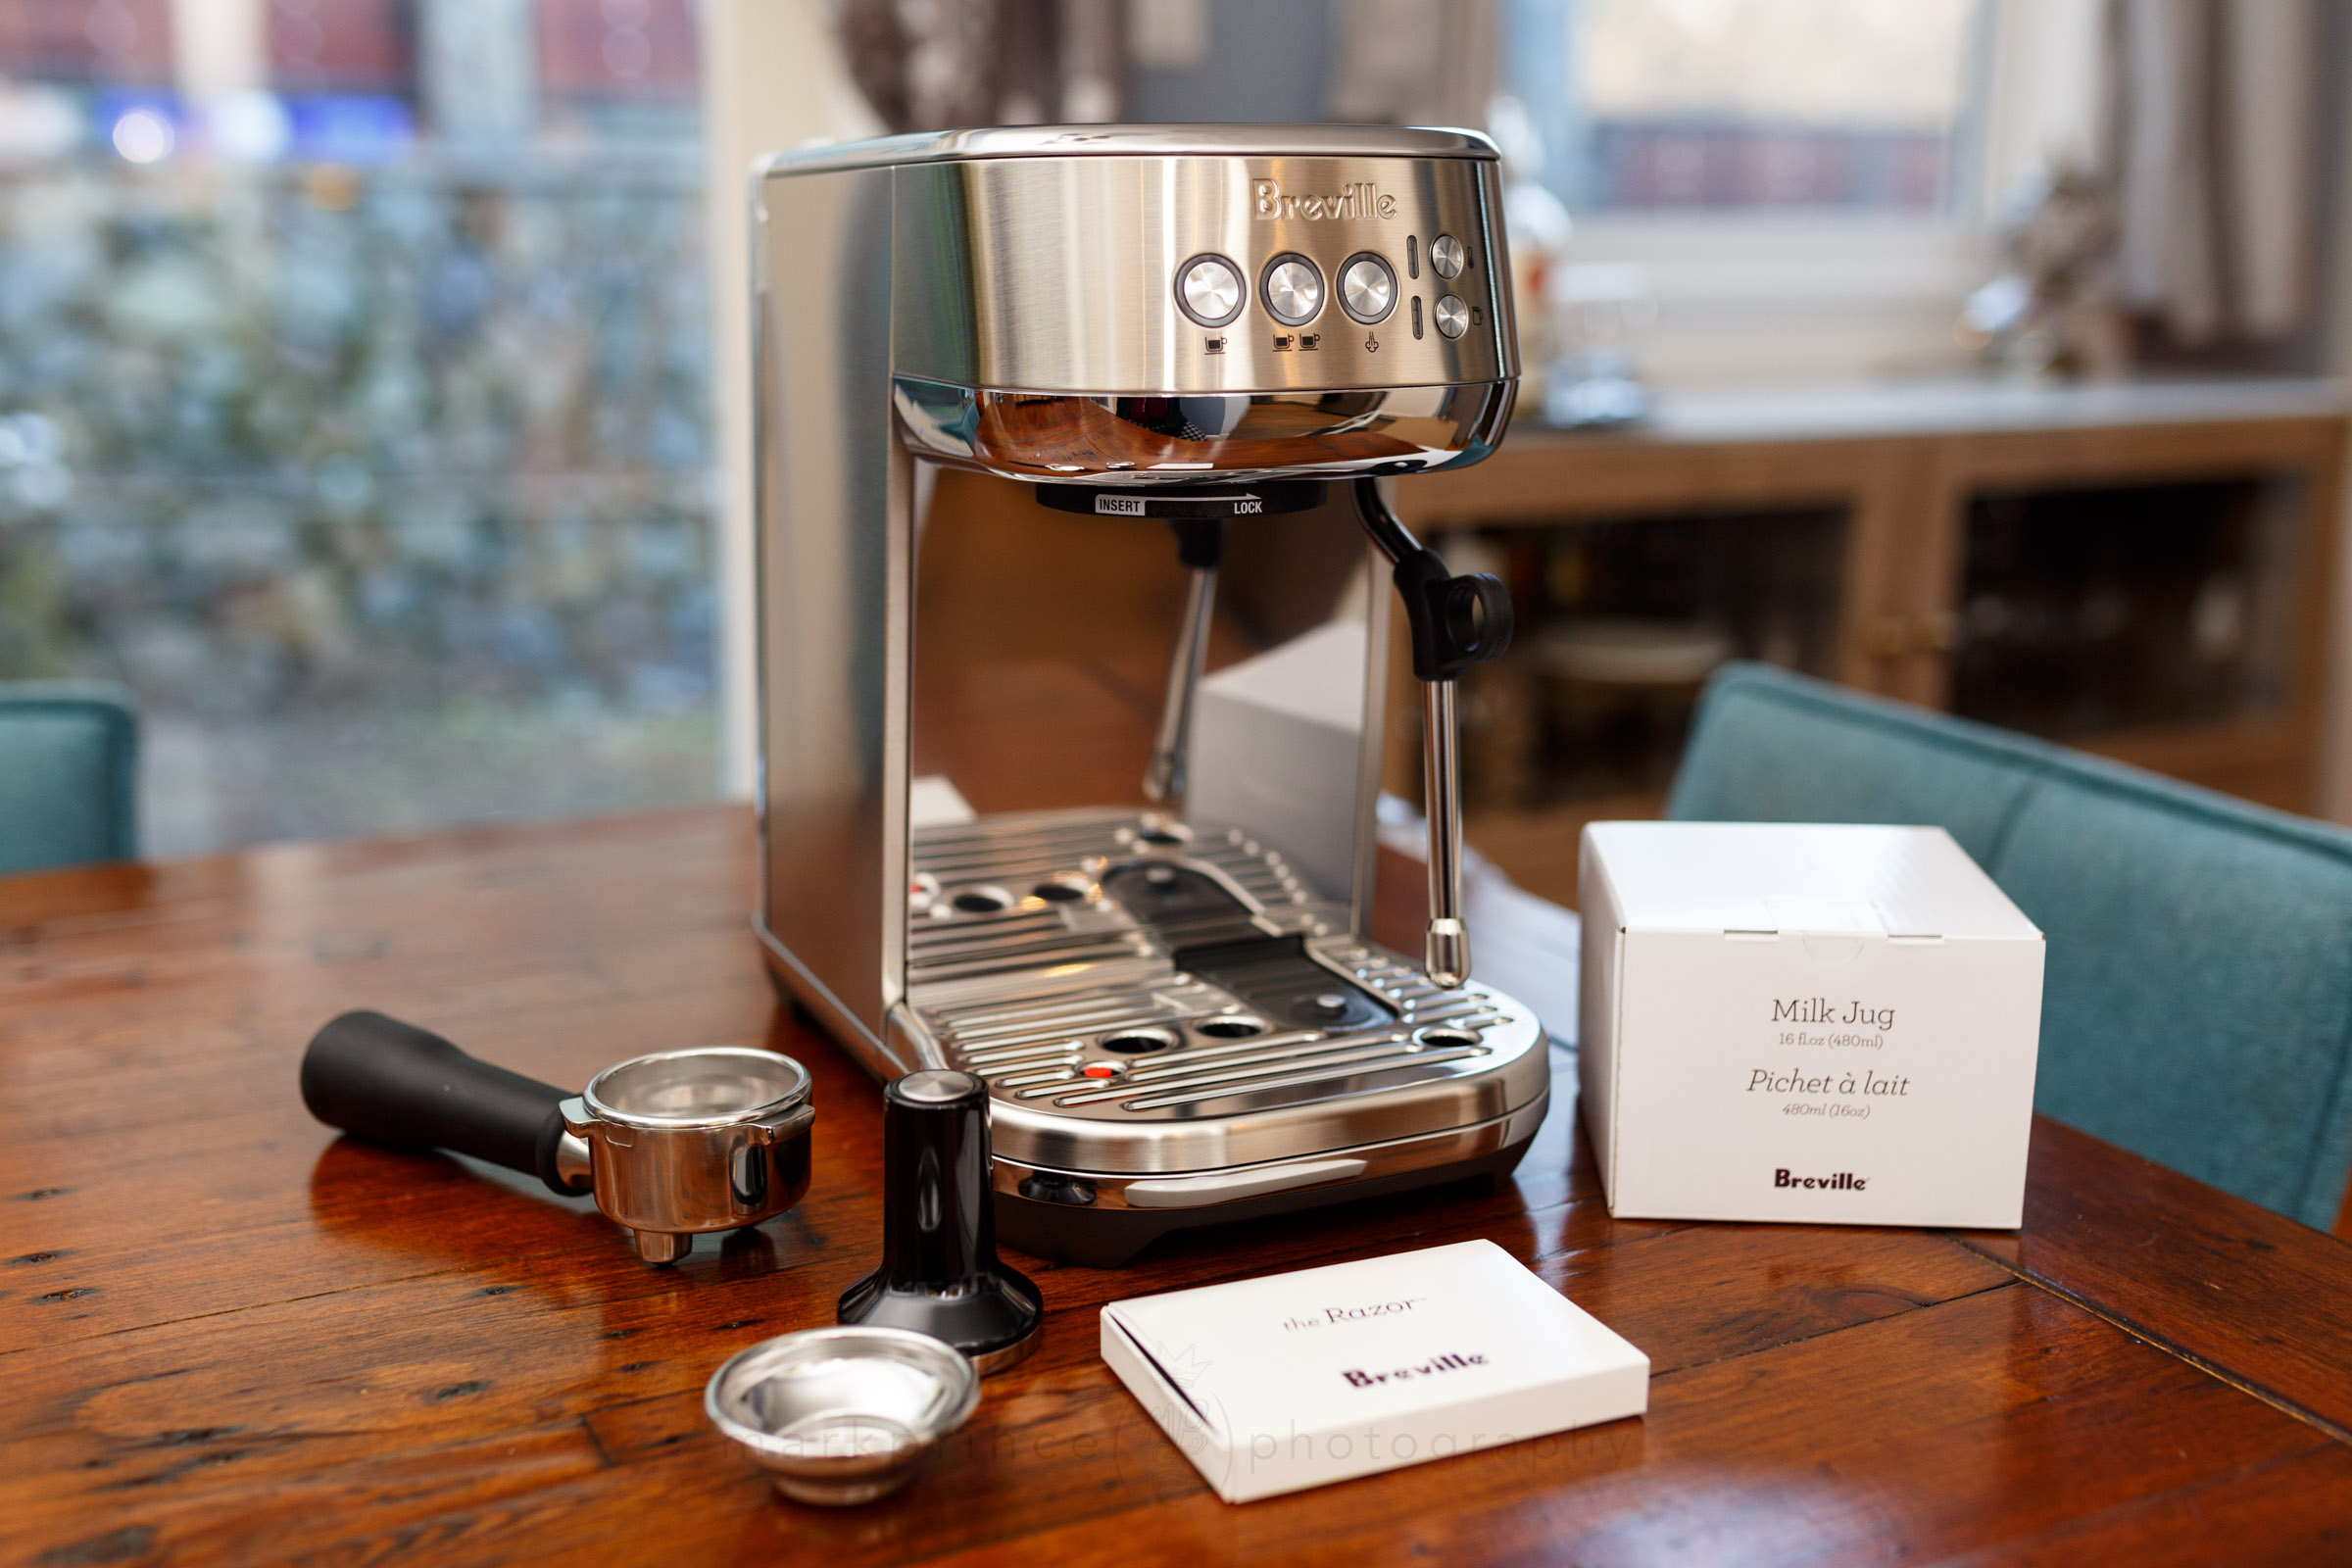 Bambino Plus - Small Home Espresso Machine, Breville